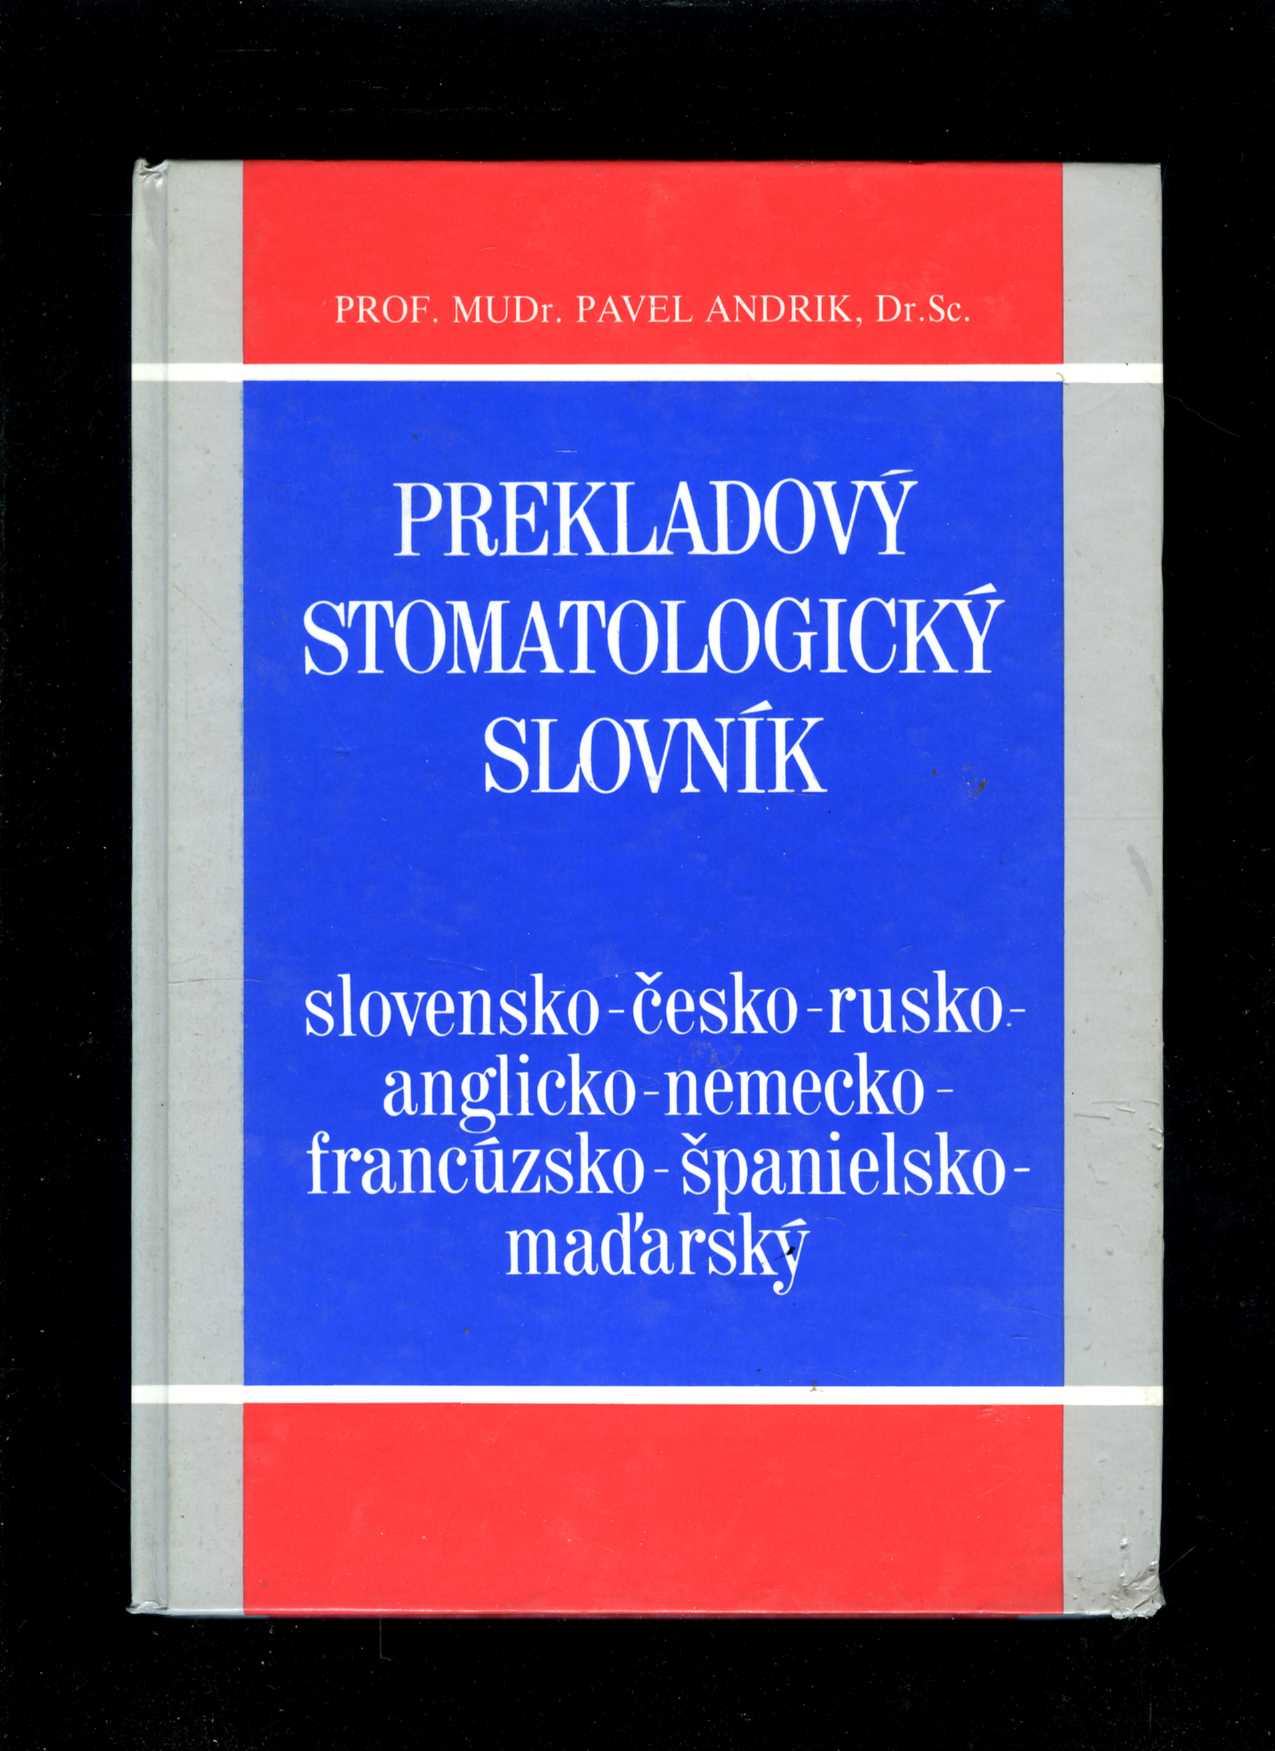 Prekladový stomatologický slovník (Pavel Andrik)